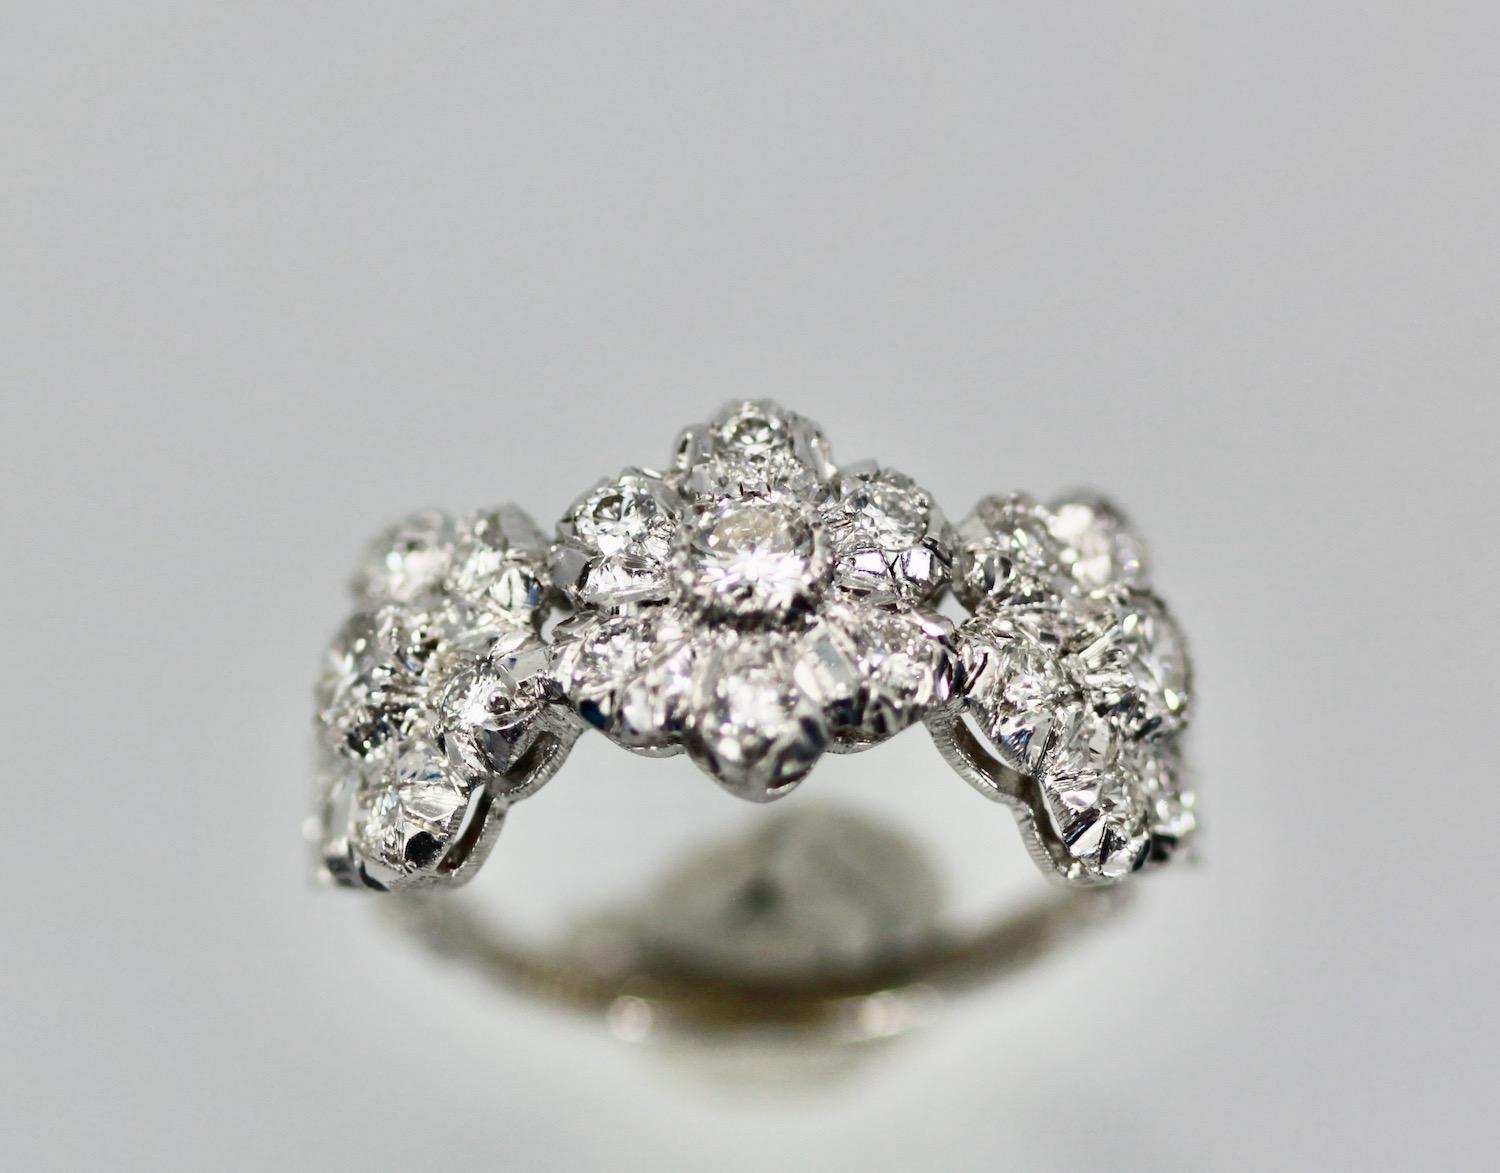 Dieser Ring von Buccellati ist einzigartig und etwas ganz Besonderes.
Ich habe gesucht und kann diesen Ring nur in Sterlingsilber finden.  Er ist mit Buccellati signiert und ist komplett mit Diamanten besetzt.  Ich finde, dass dies ein perfekter